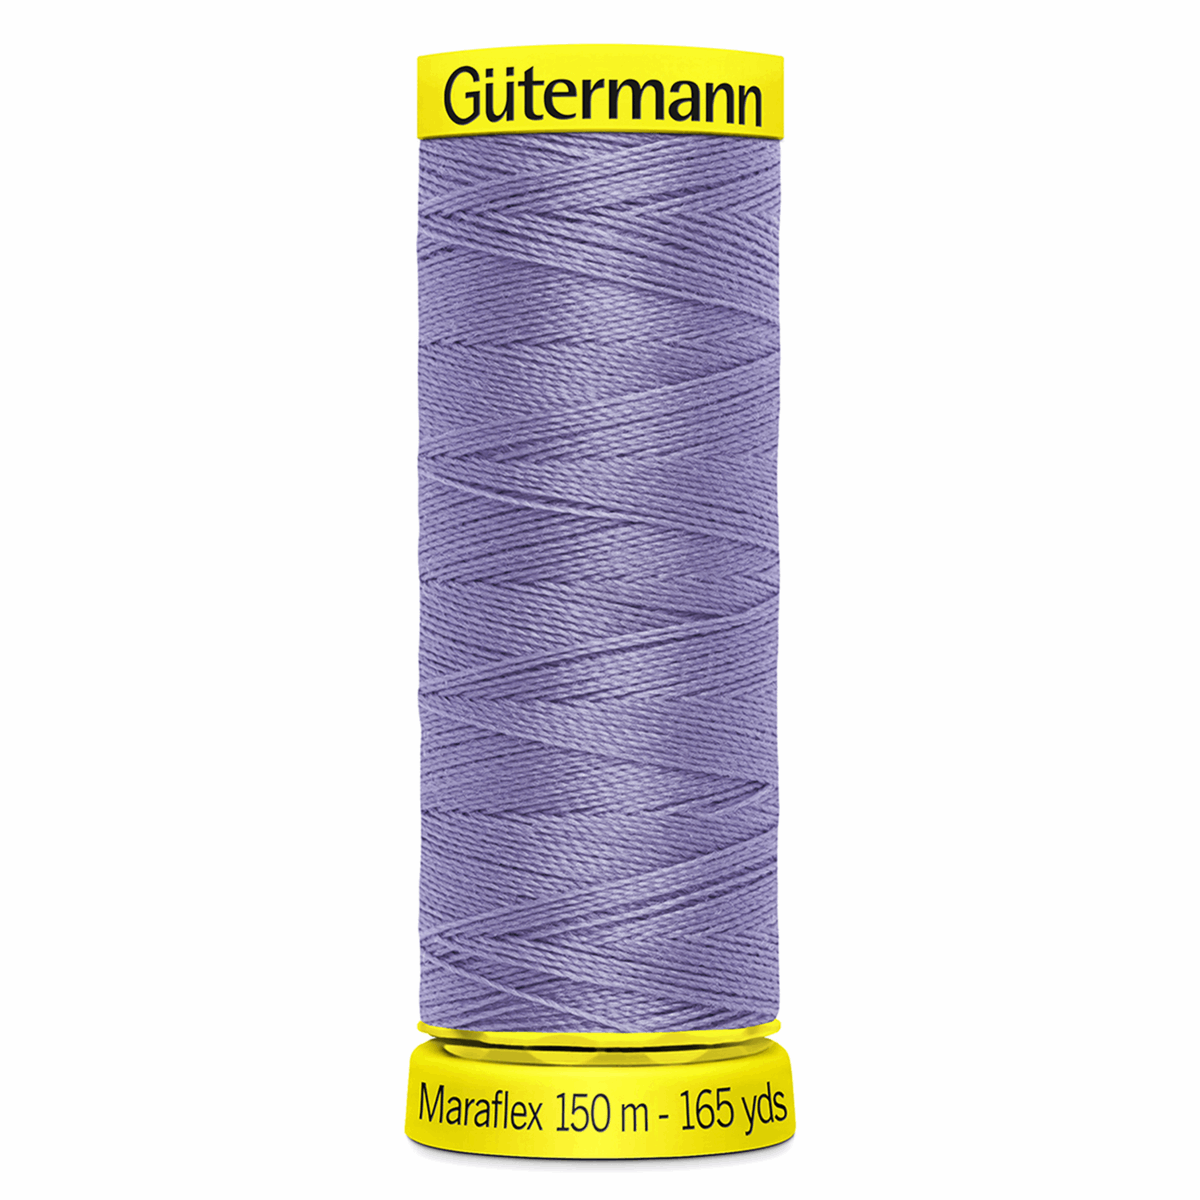 Gutermann Maraflex Elastic Sewing Thread 150m  Lilac 158